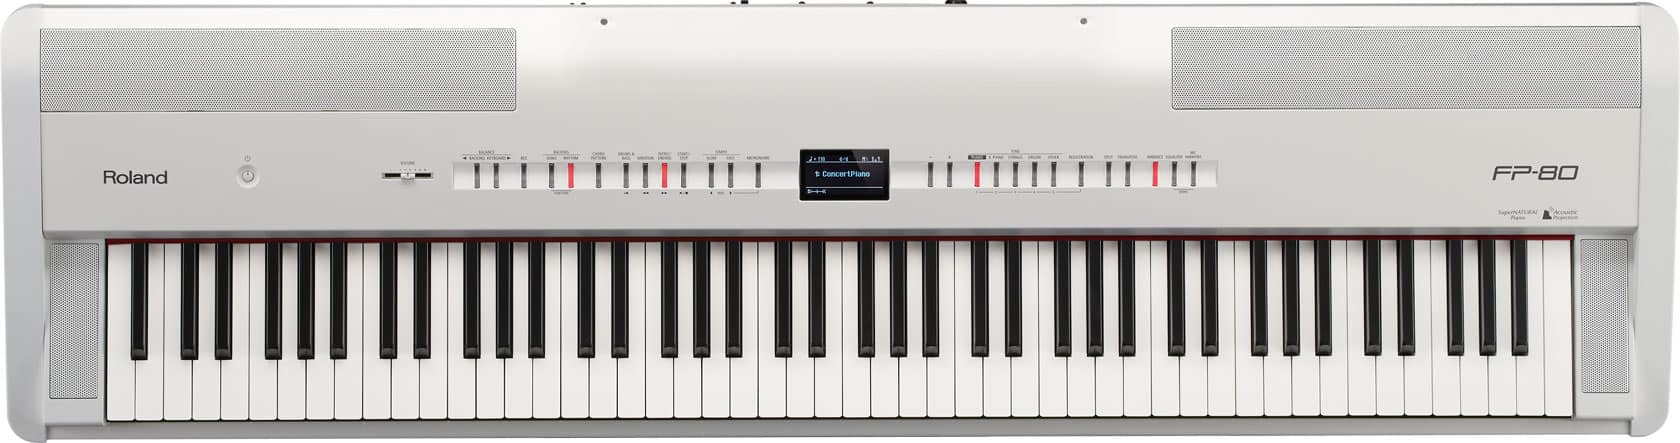 Roland FP-80 - Digitalpiano mit vielen Extras - Musikmesse 2013